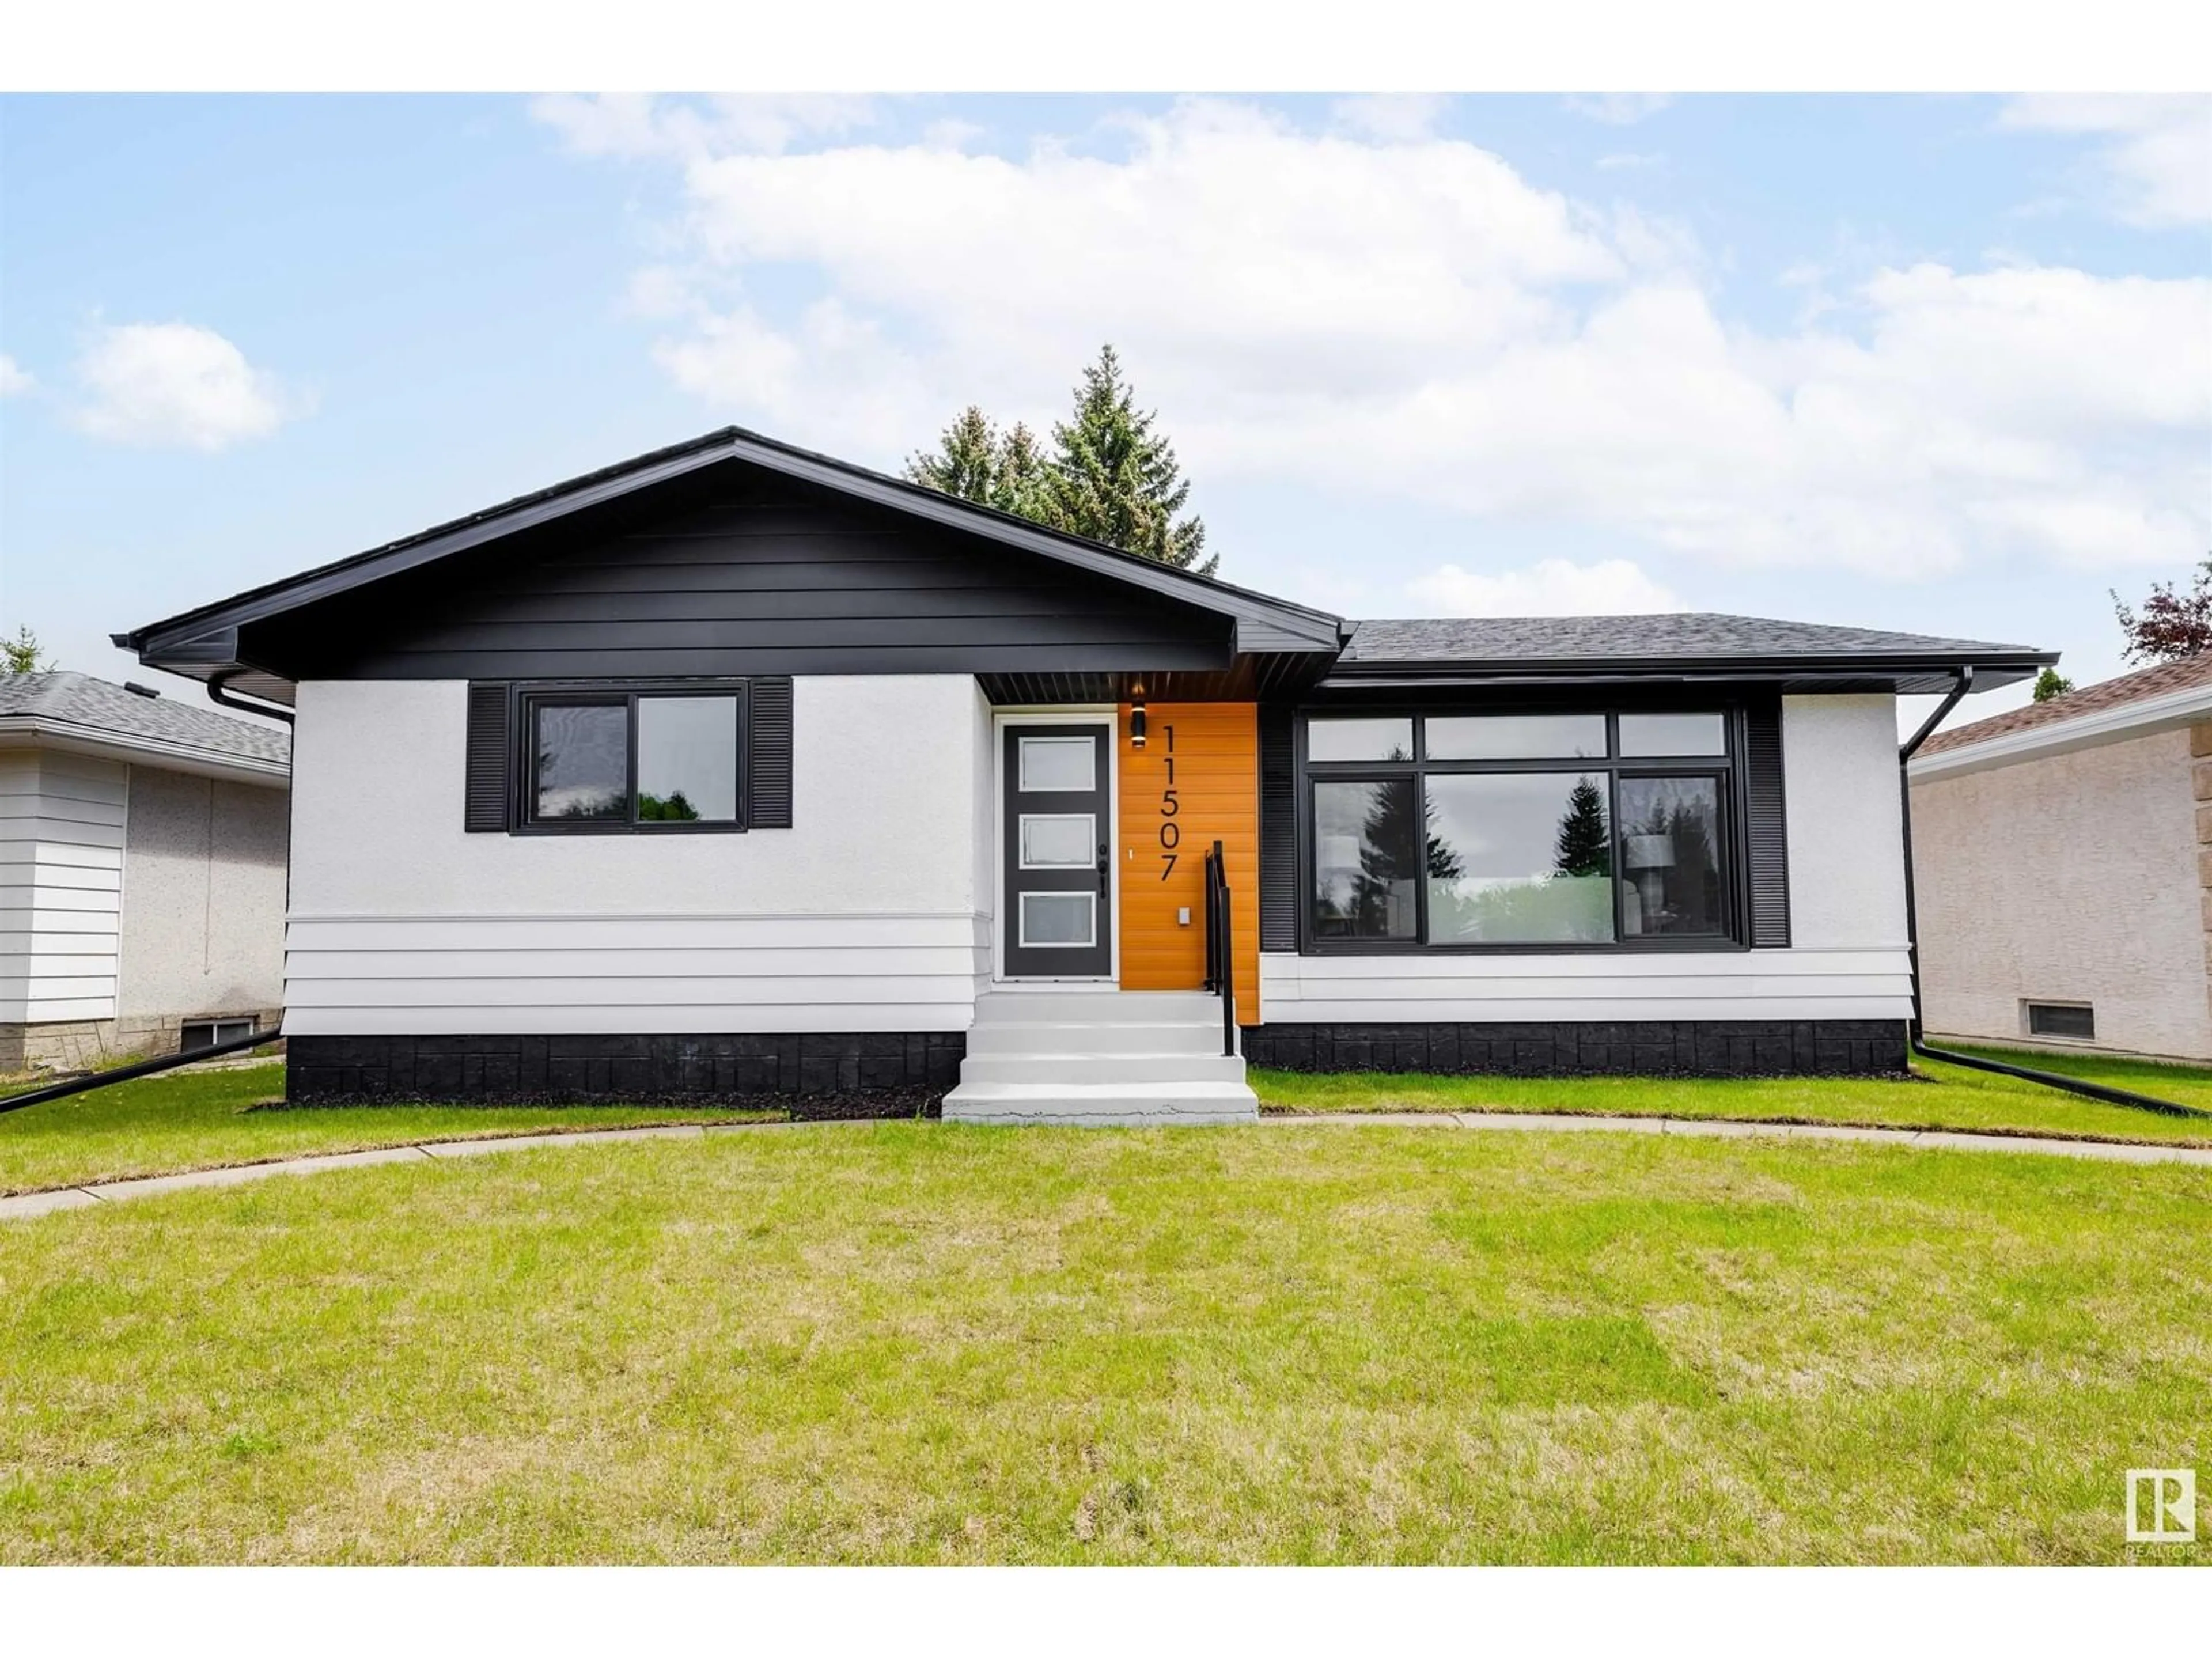 Home with vinyl exterior material for 11507 39 AV NW, Edmonton Alberta T6J0M5